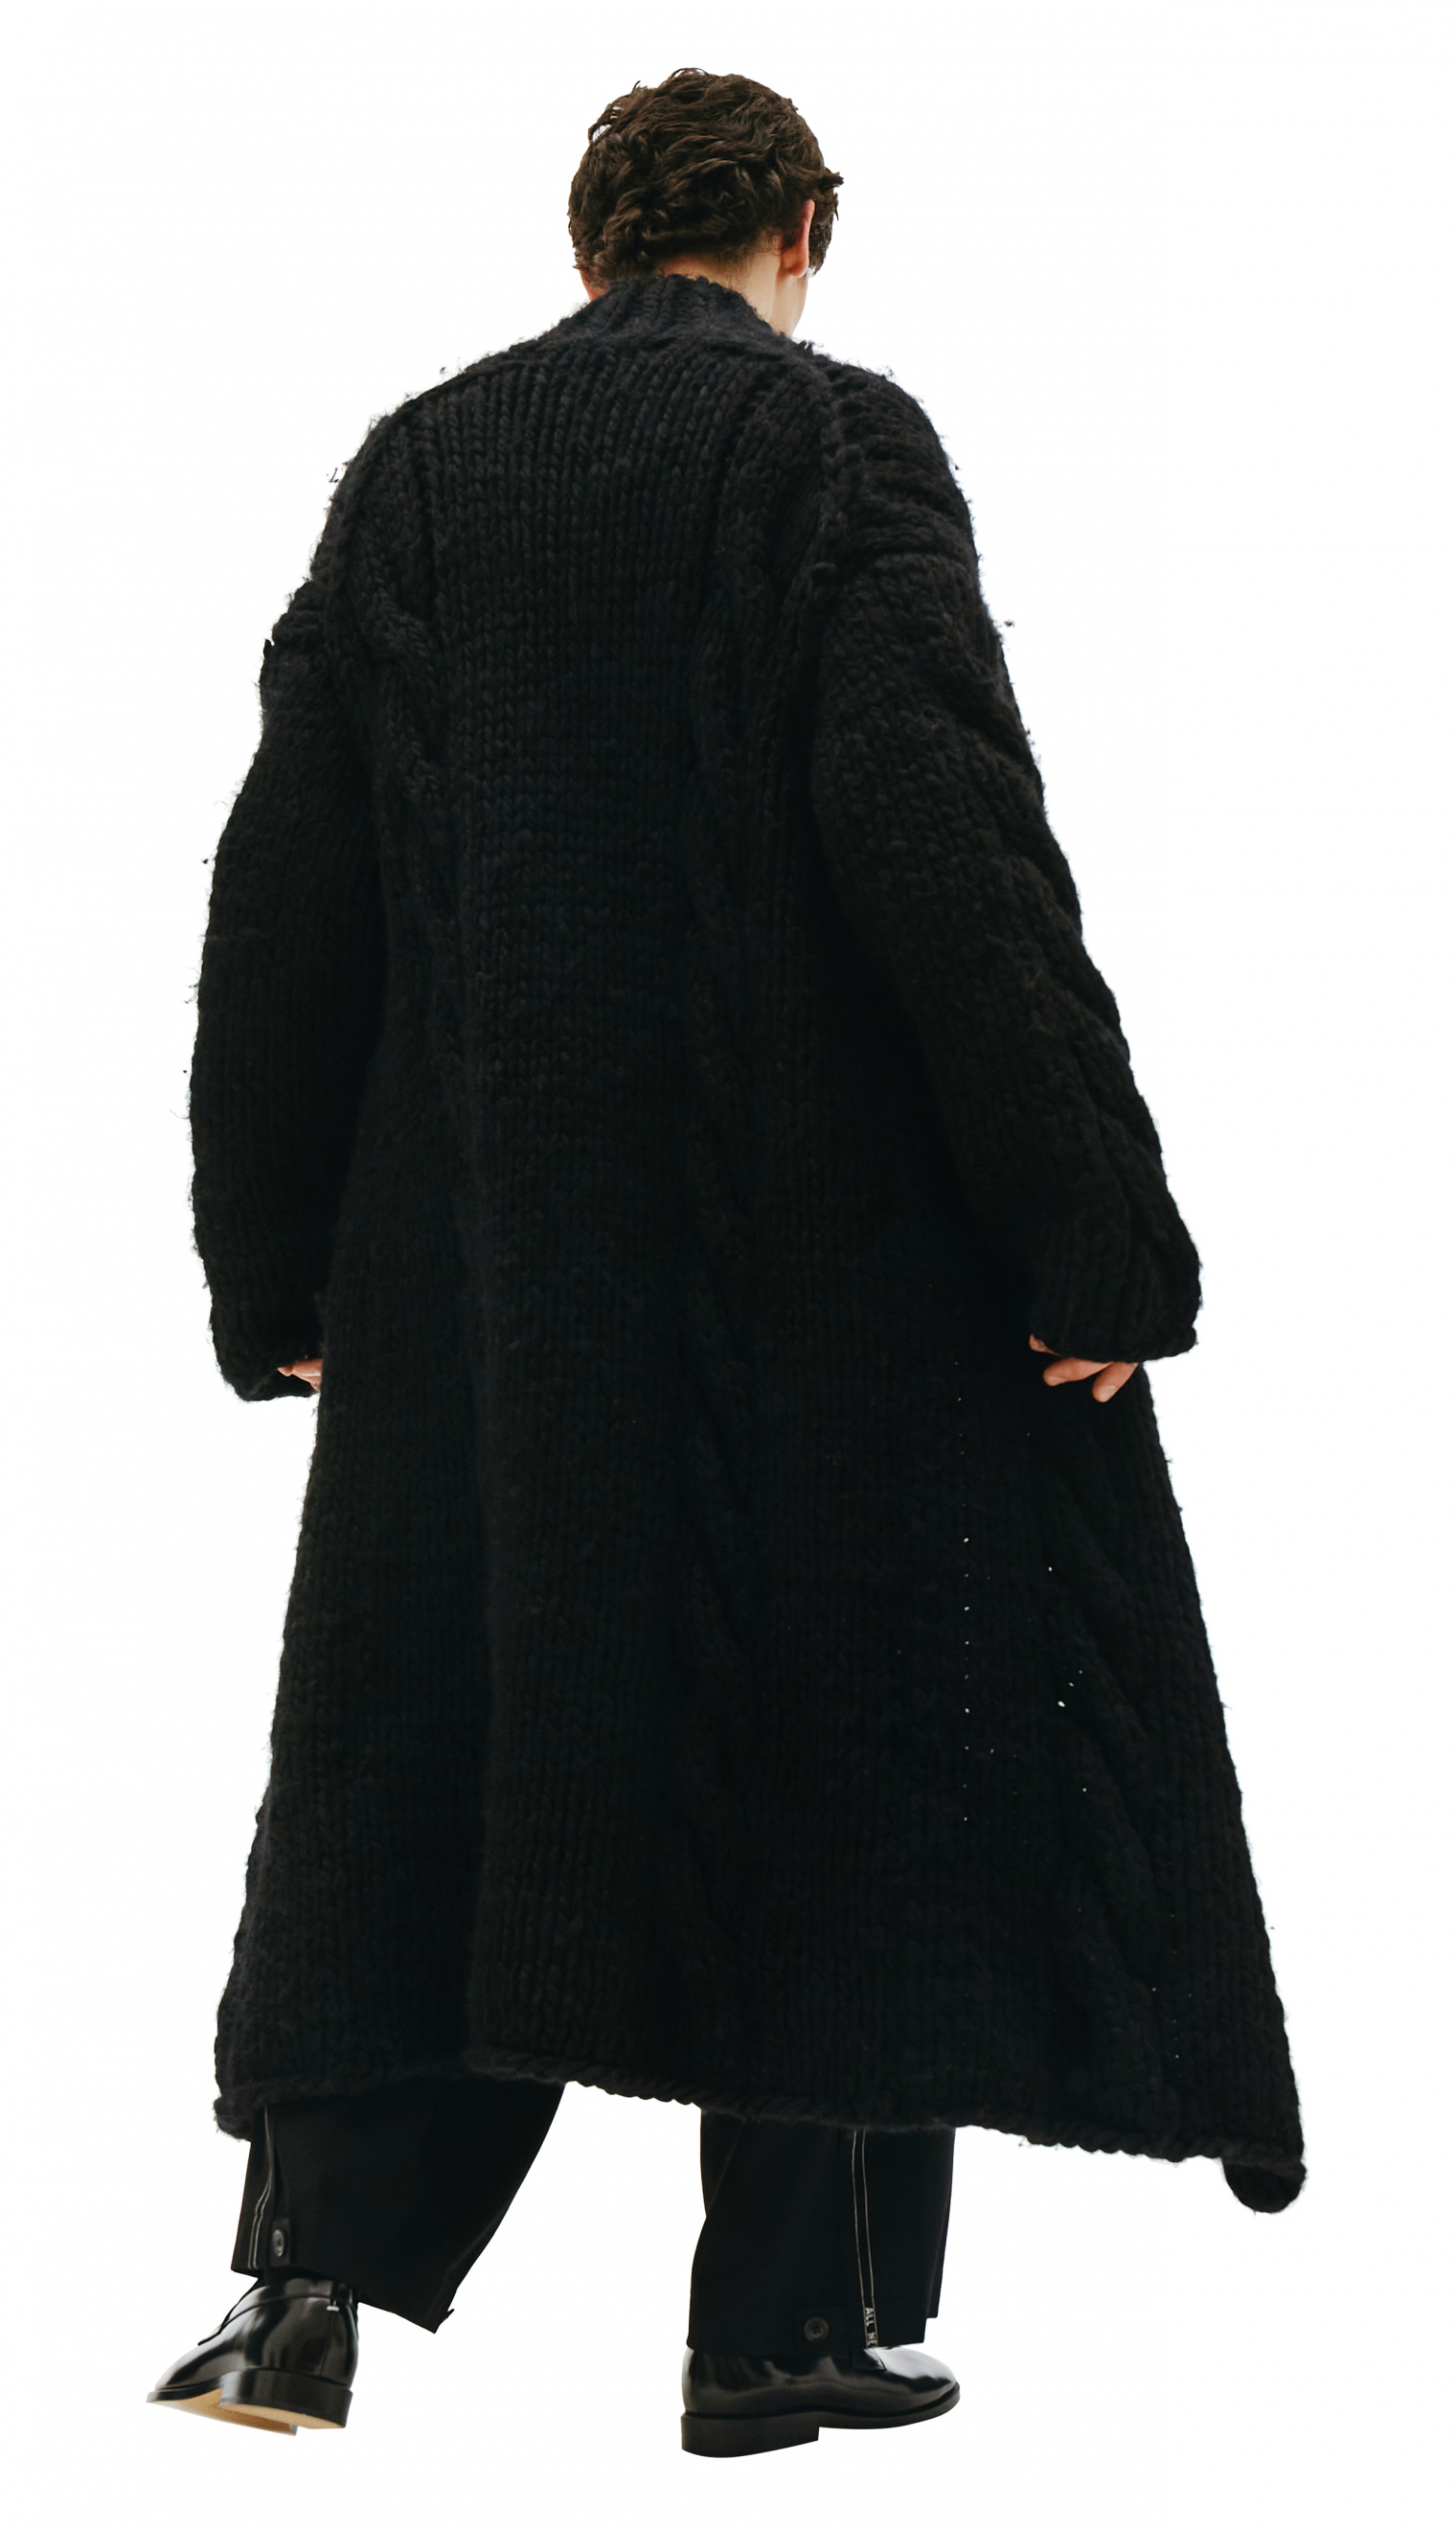 Buy Yohji Yamamoto men black chunky knit long cardigan coat for 